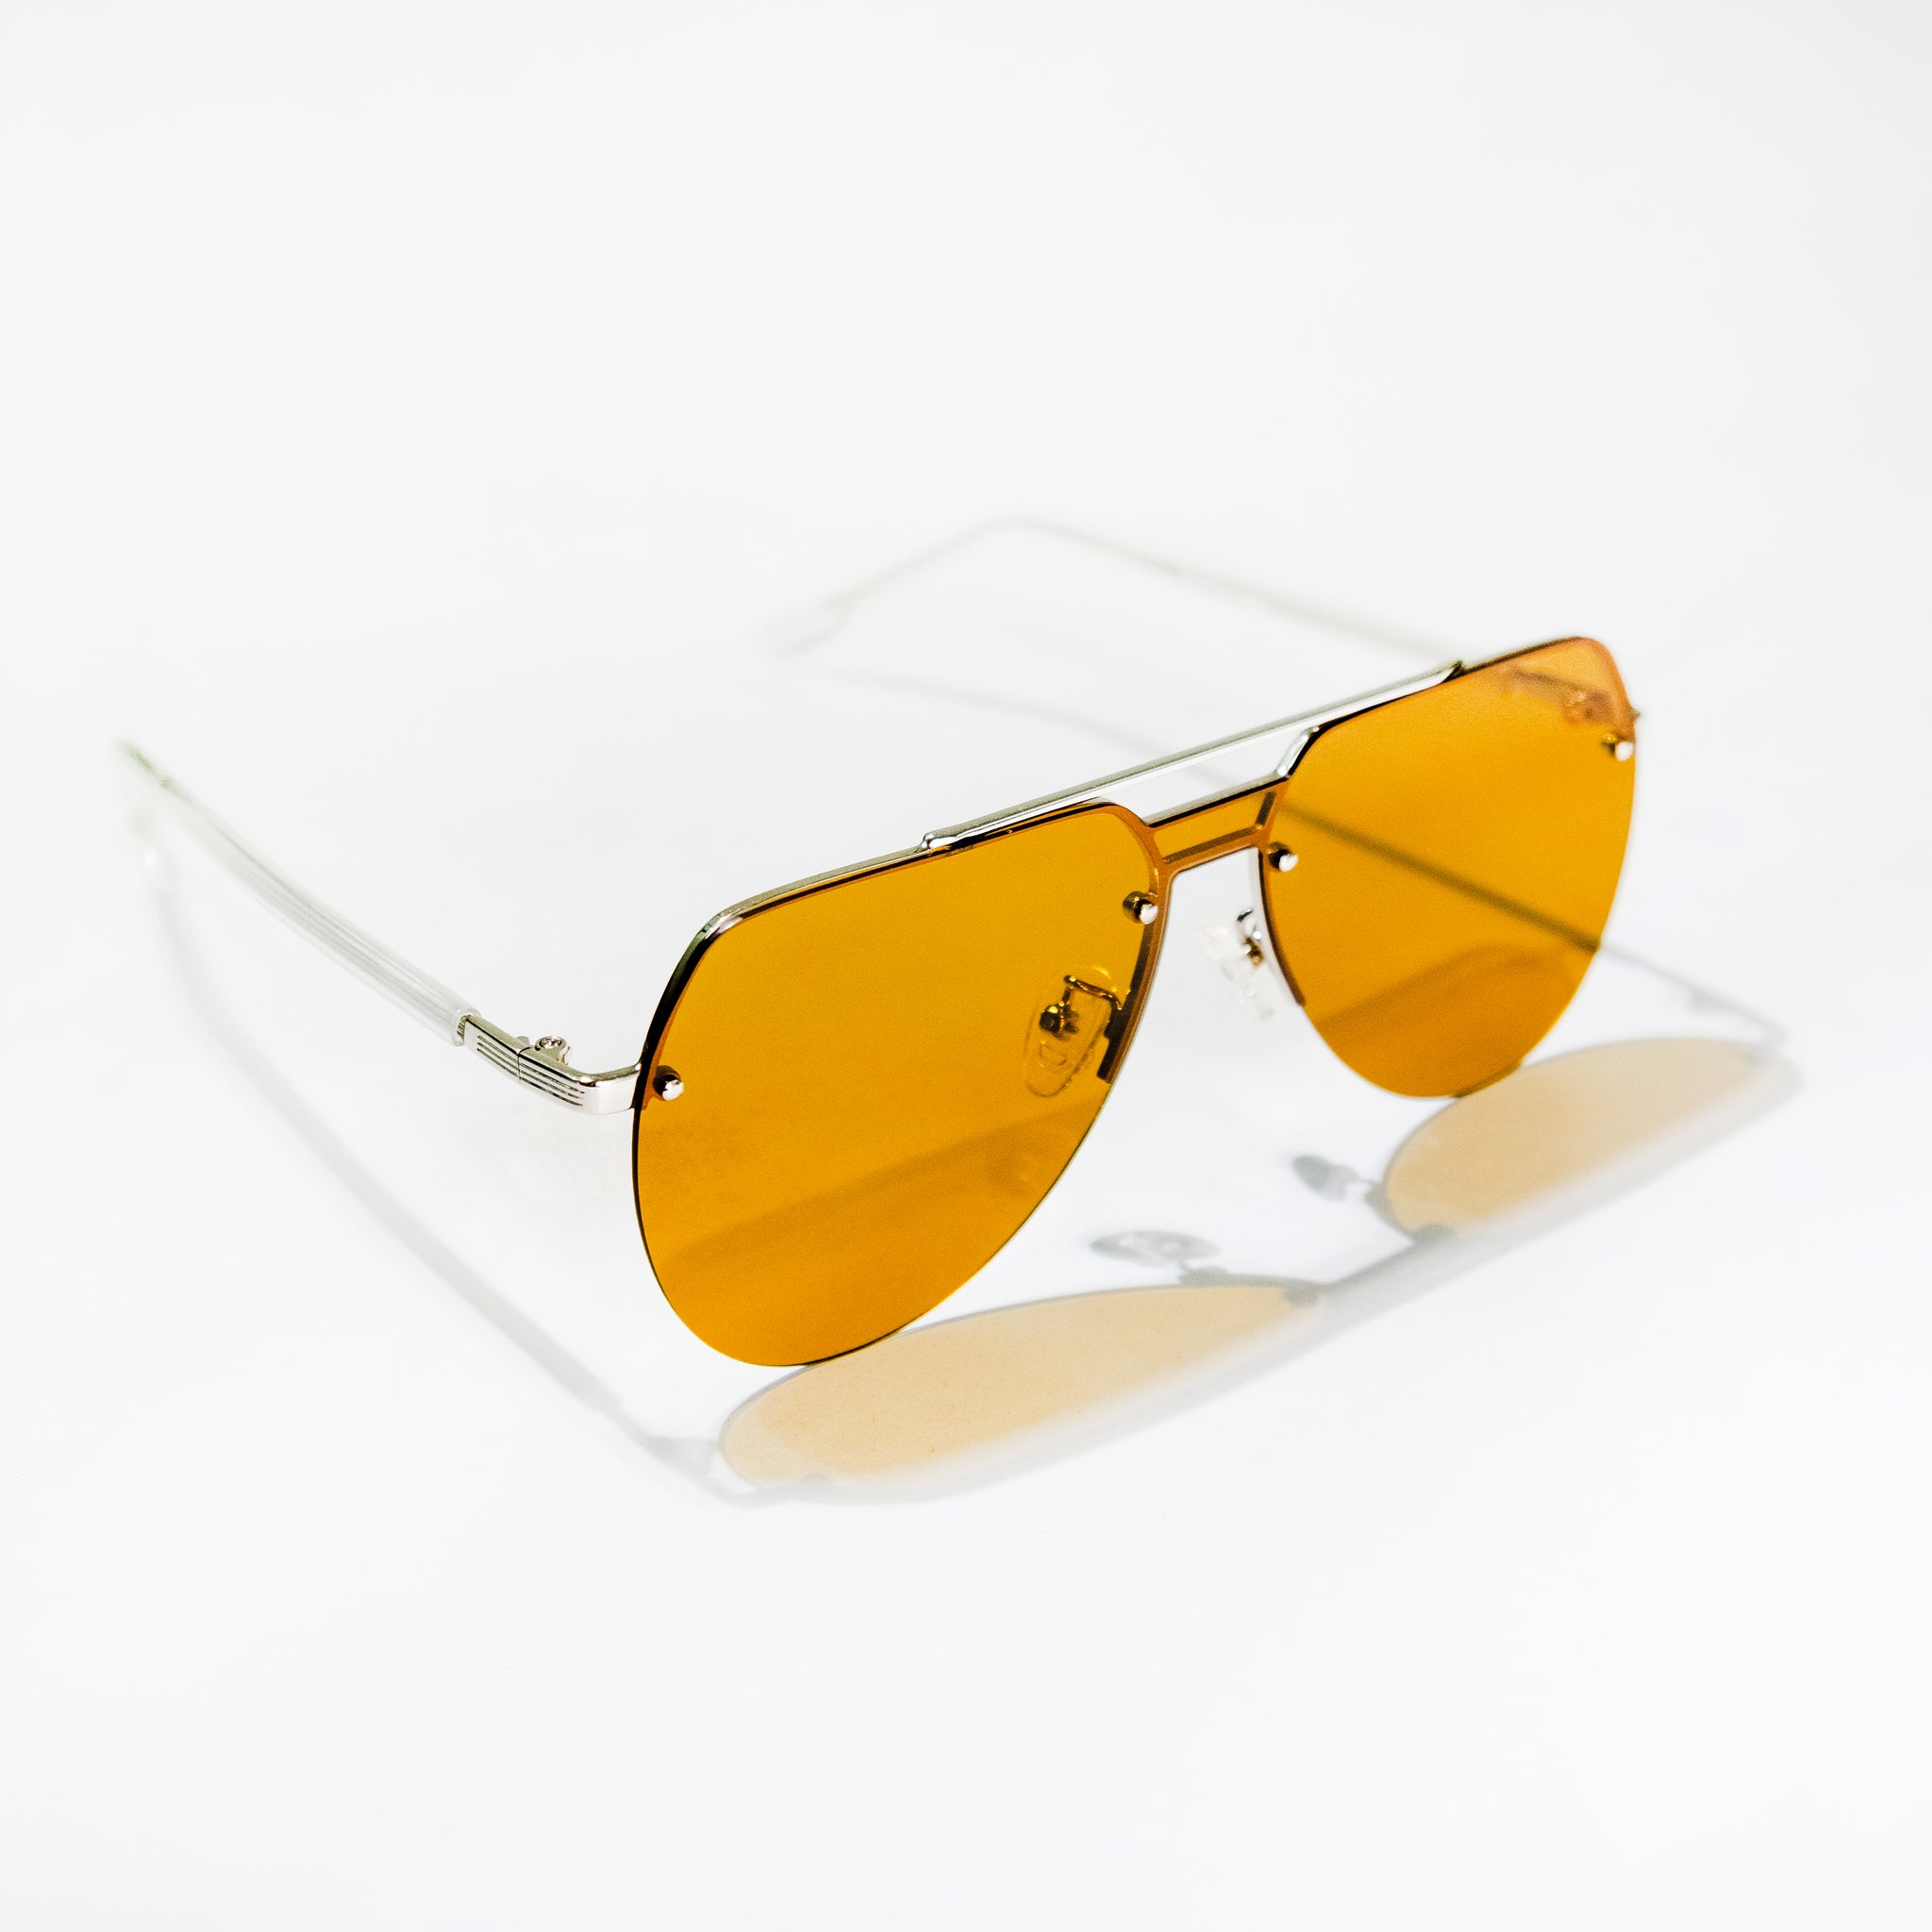 Chokore Aviator Sunglasses (Yellow)